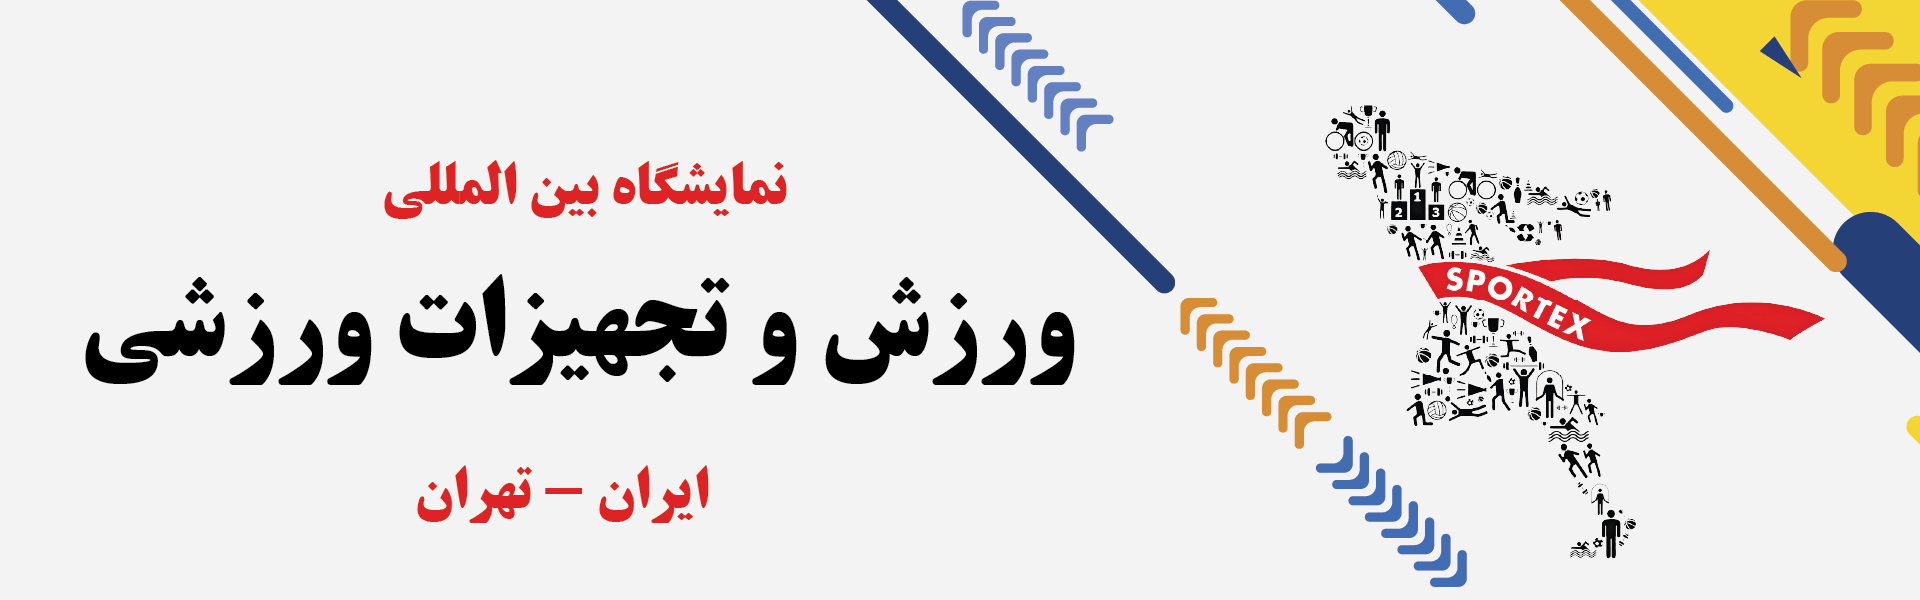 نمایشگاه بین المللی ورزش و تجهیزات ورزشی تهران